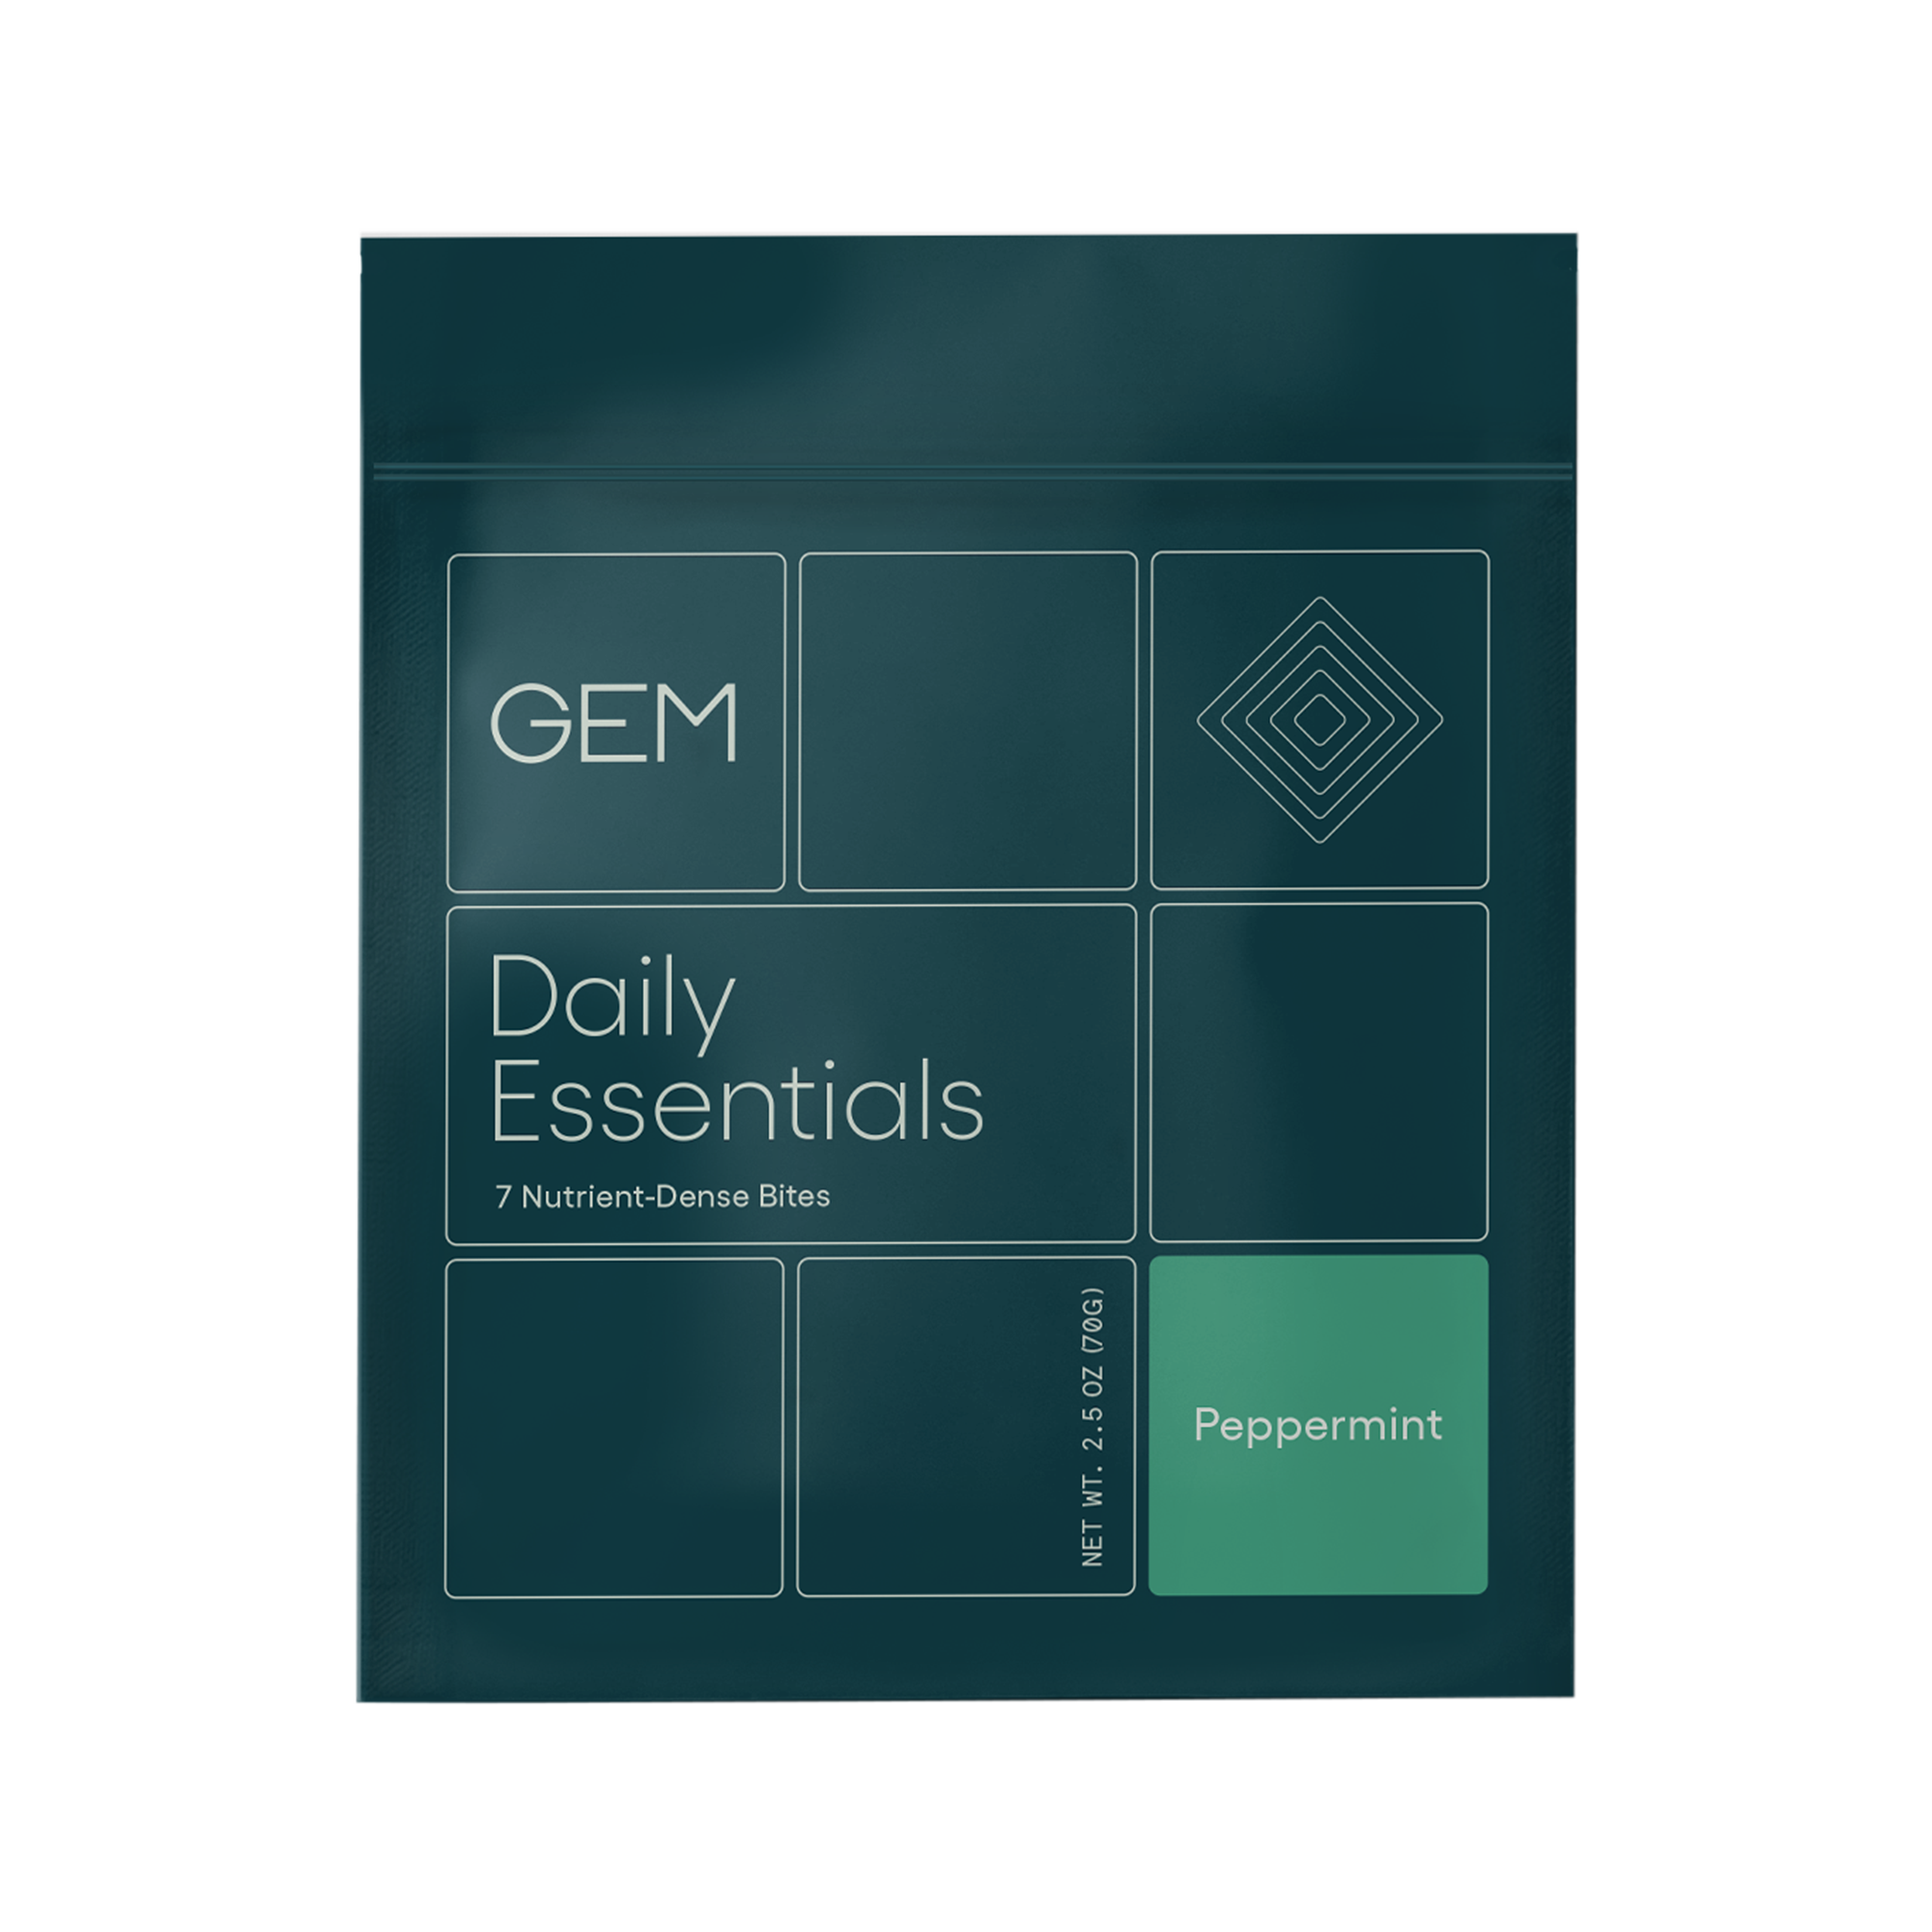 GEM Daily Essentials Vitamin Bites